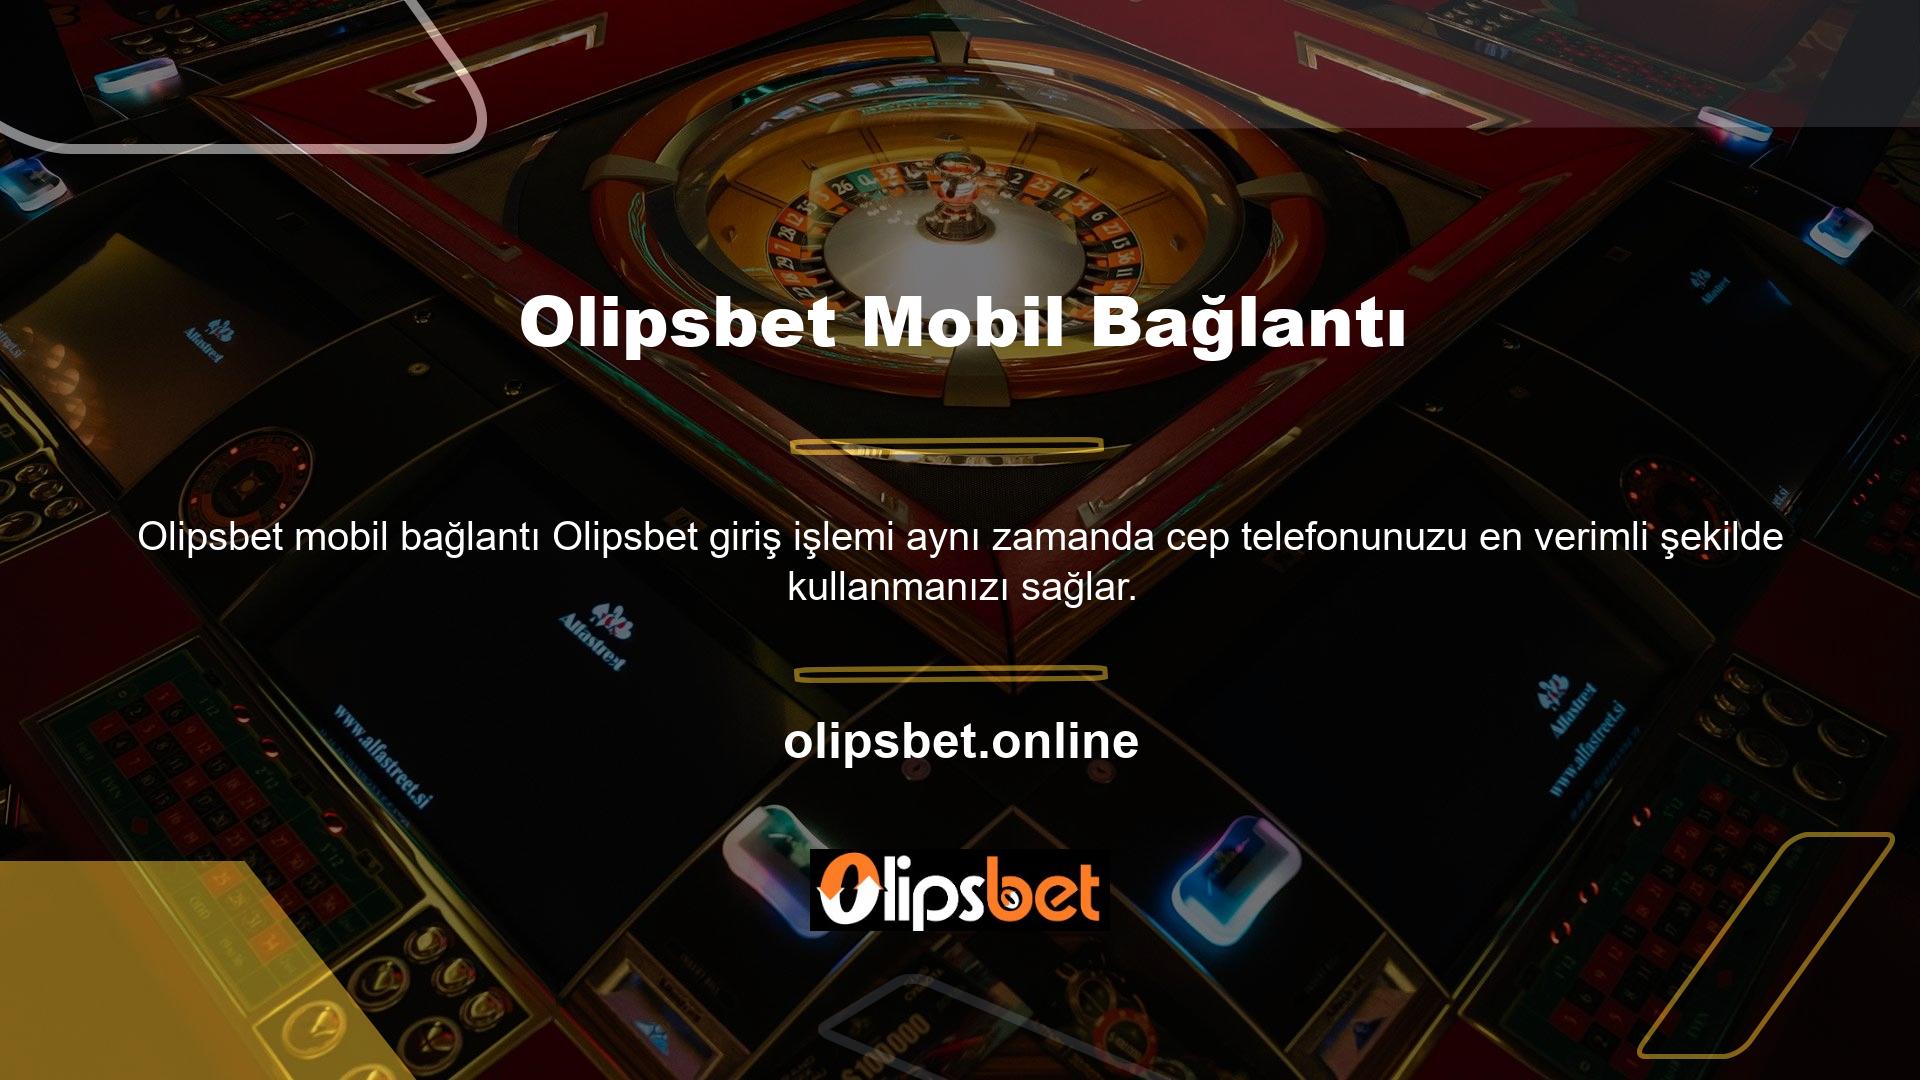 Artık birçok bahisçi Olipsbet mobil bağlantıları üzerinden casino hizmetleri satın almak için cep telefonlarını kullanıyor